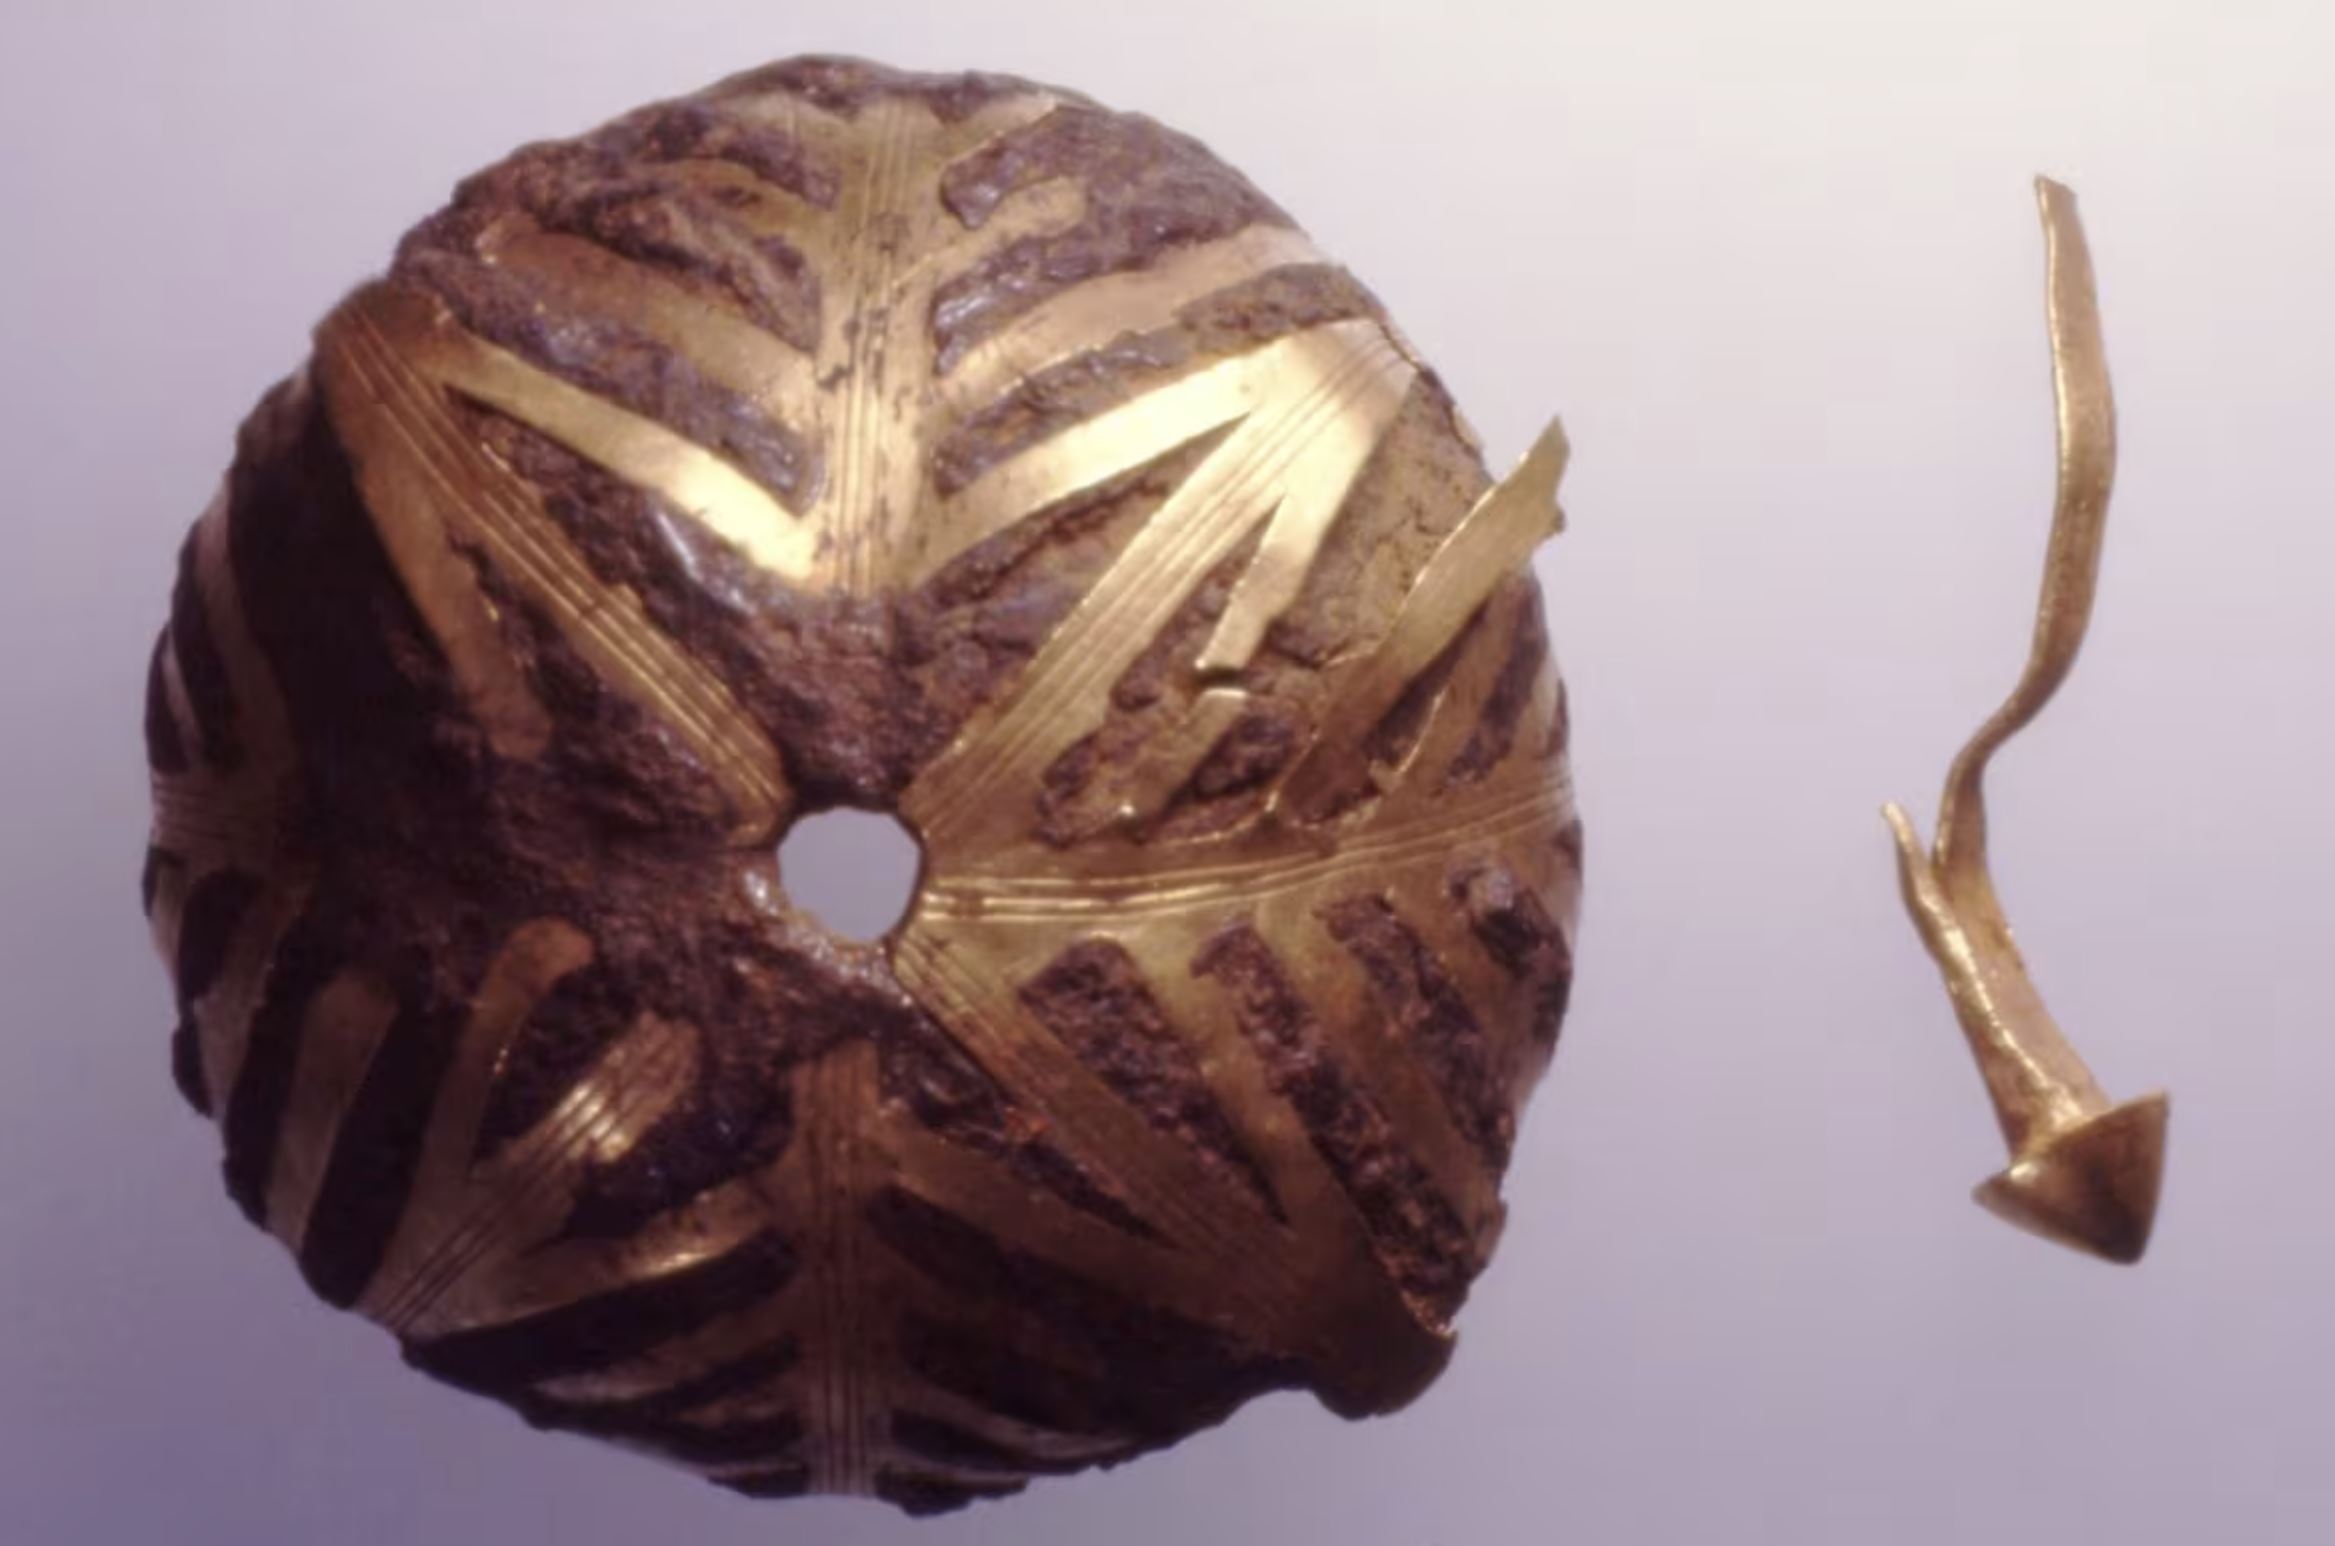 Drevno blago iz Brončanog doba izrađeno od izvanzemaljskog materijala. Izvor slike: CSIC, repozitorij Španjolskog nacionalnog istraživačkog vijeća.